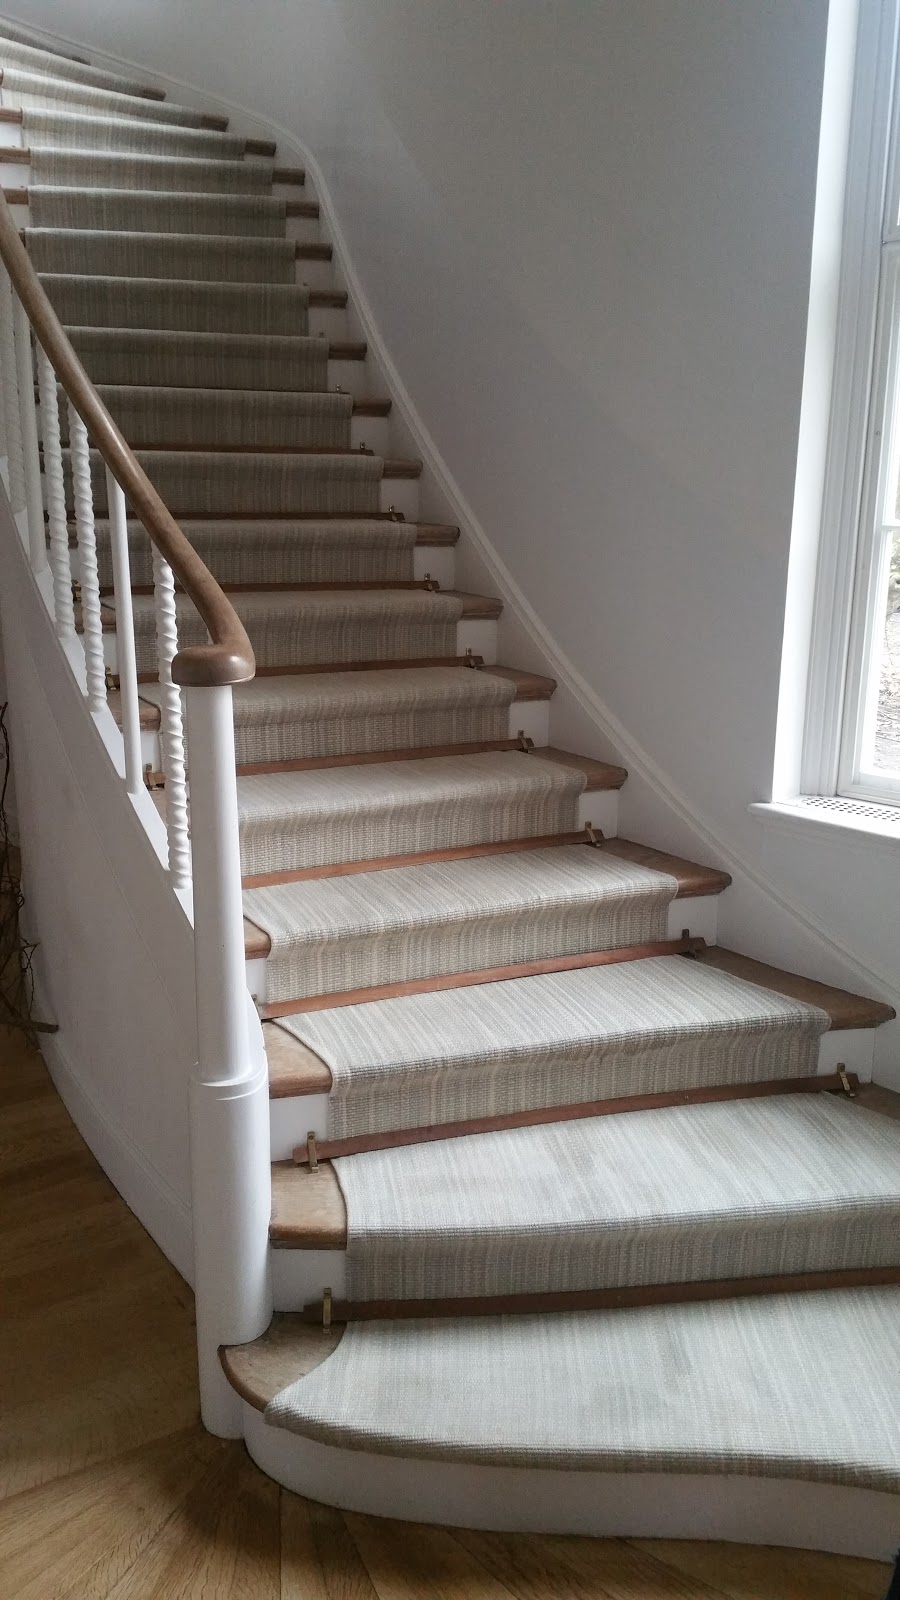 AB Pro Carpet Clean | 2855 NY-9D, Wappingers Falls, NY 12590 | Phone: (845) 661-5745